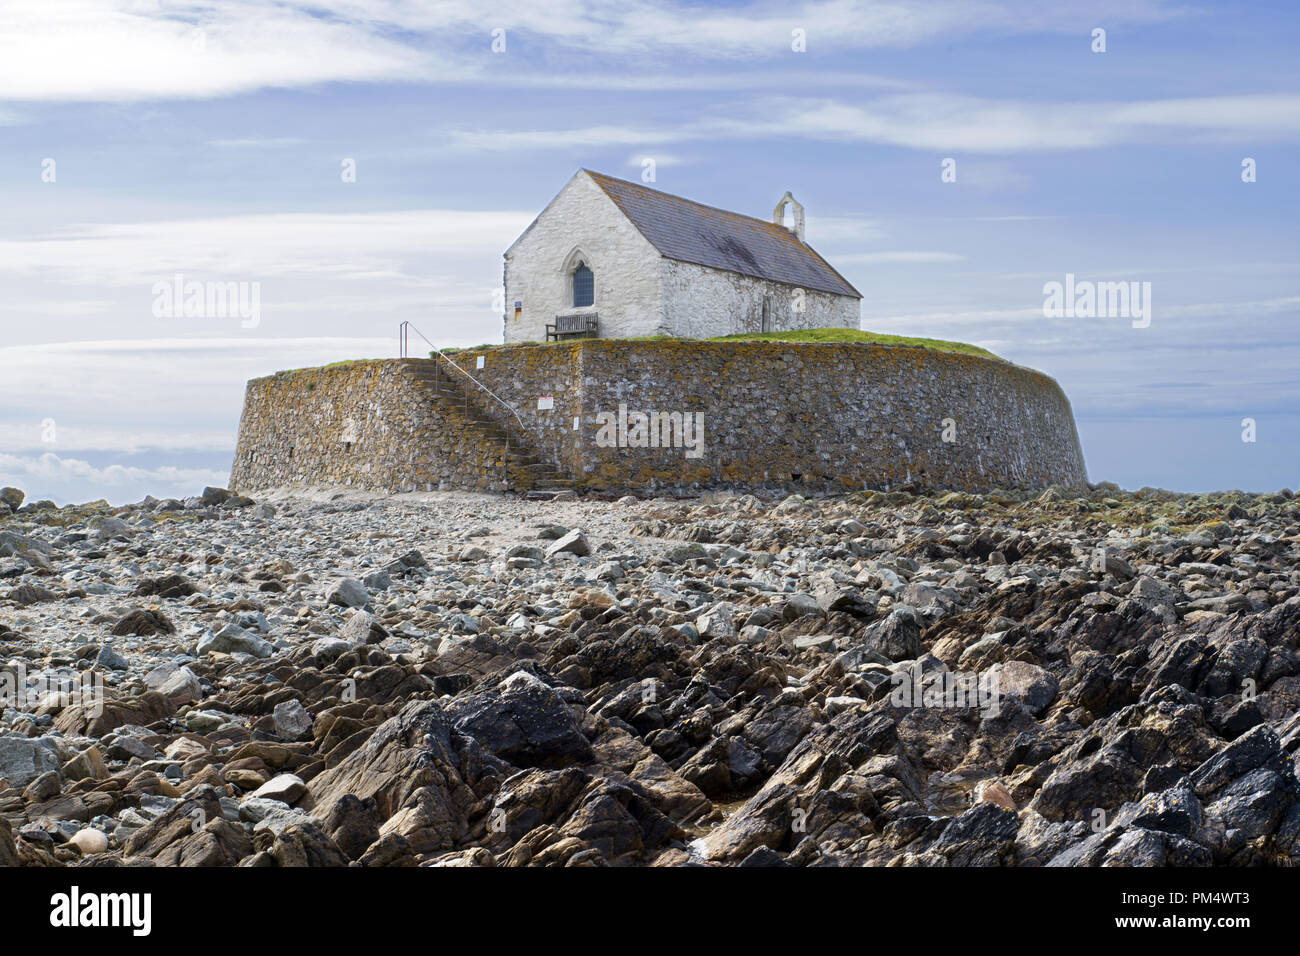 St Cwyfan's, als Kirche im Meer bekannt ist, liegt auf der kleinen Insel in der Nähe von Cribinau Gezeiten Aberffraw, Anglesey gelegen. Es stammt aus dem 12. Jahrhundert. Stockfoto